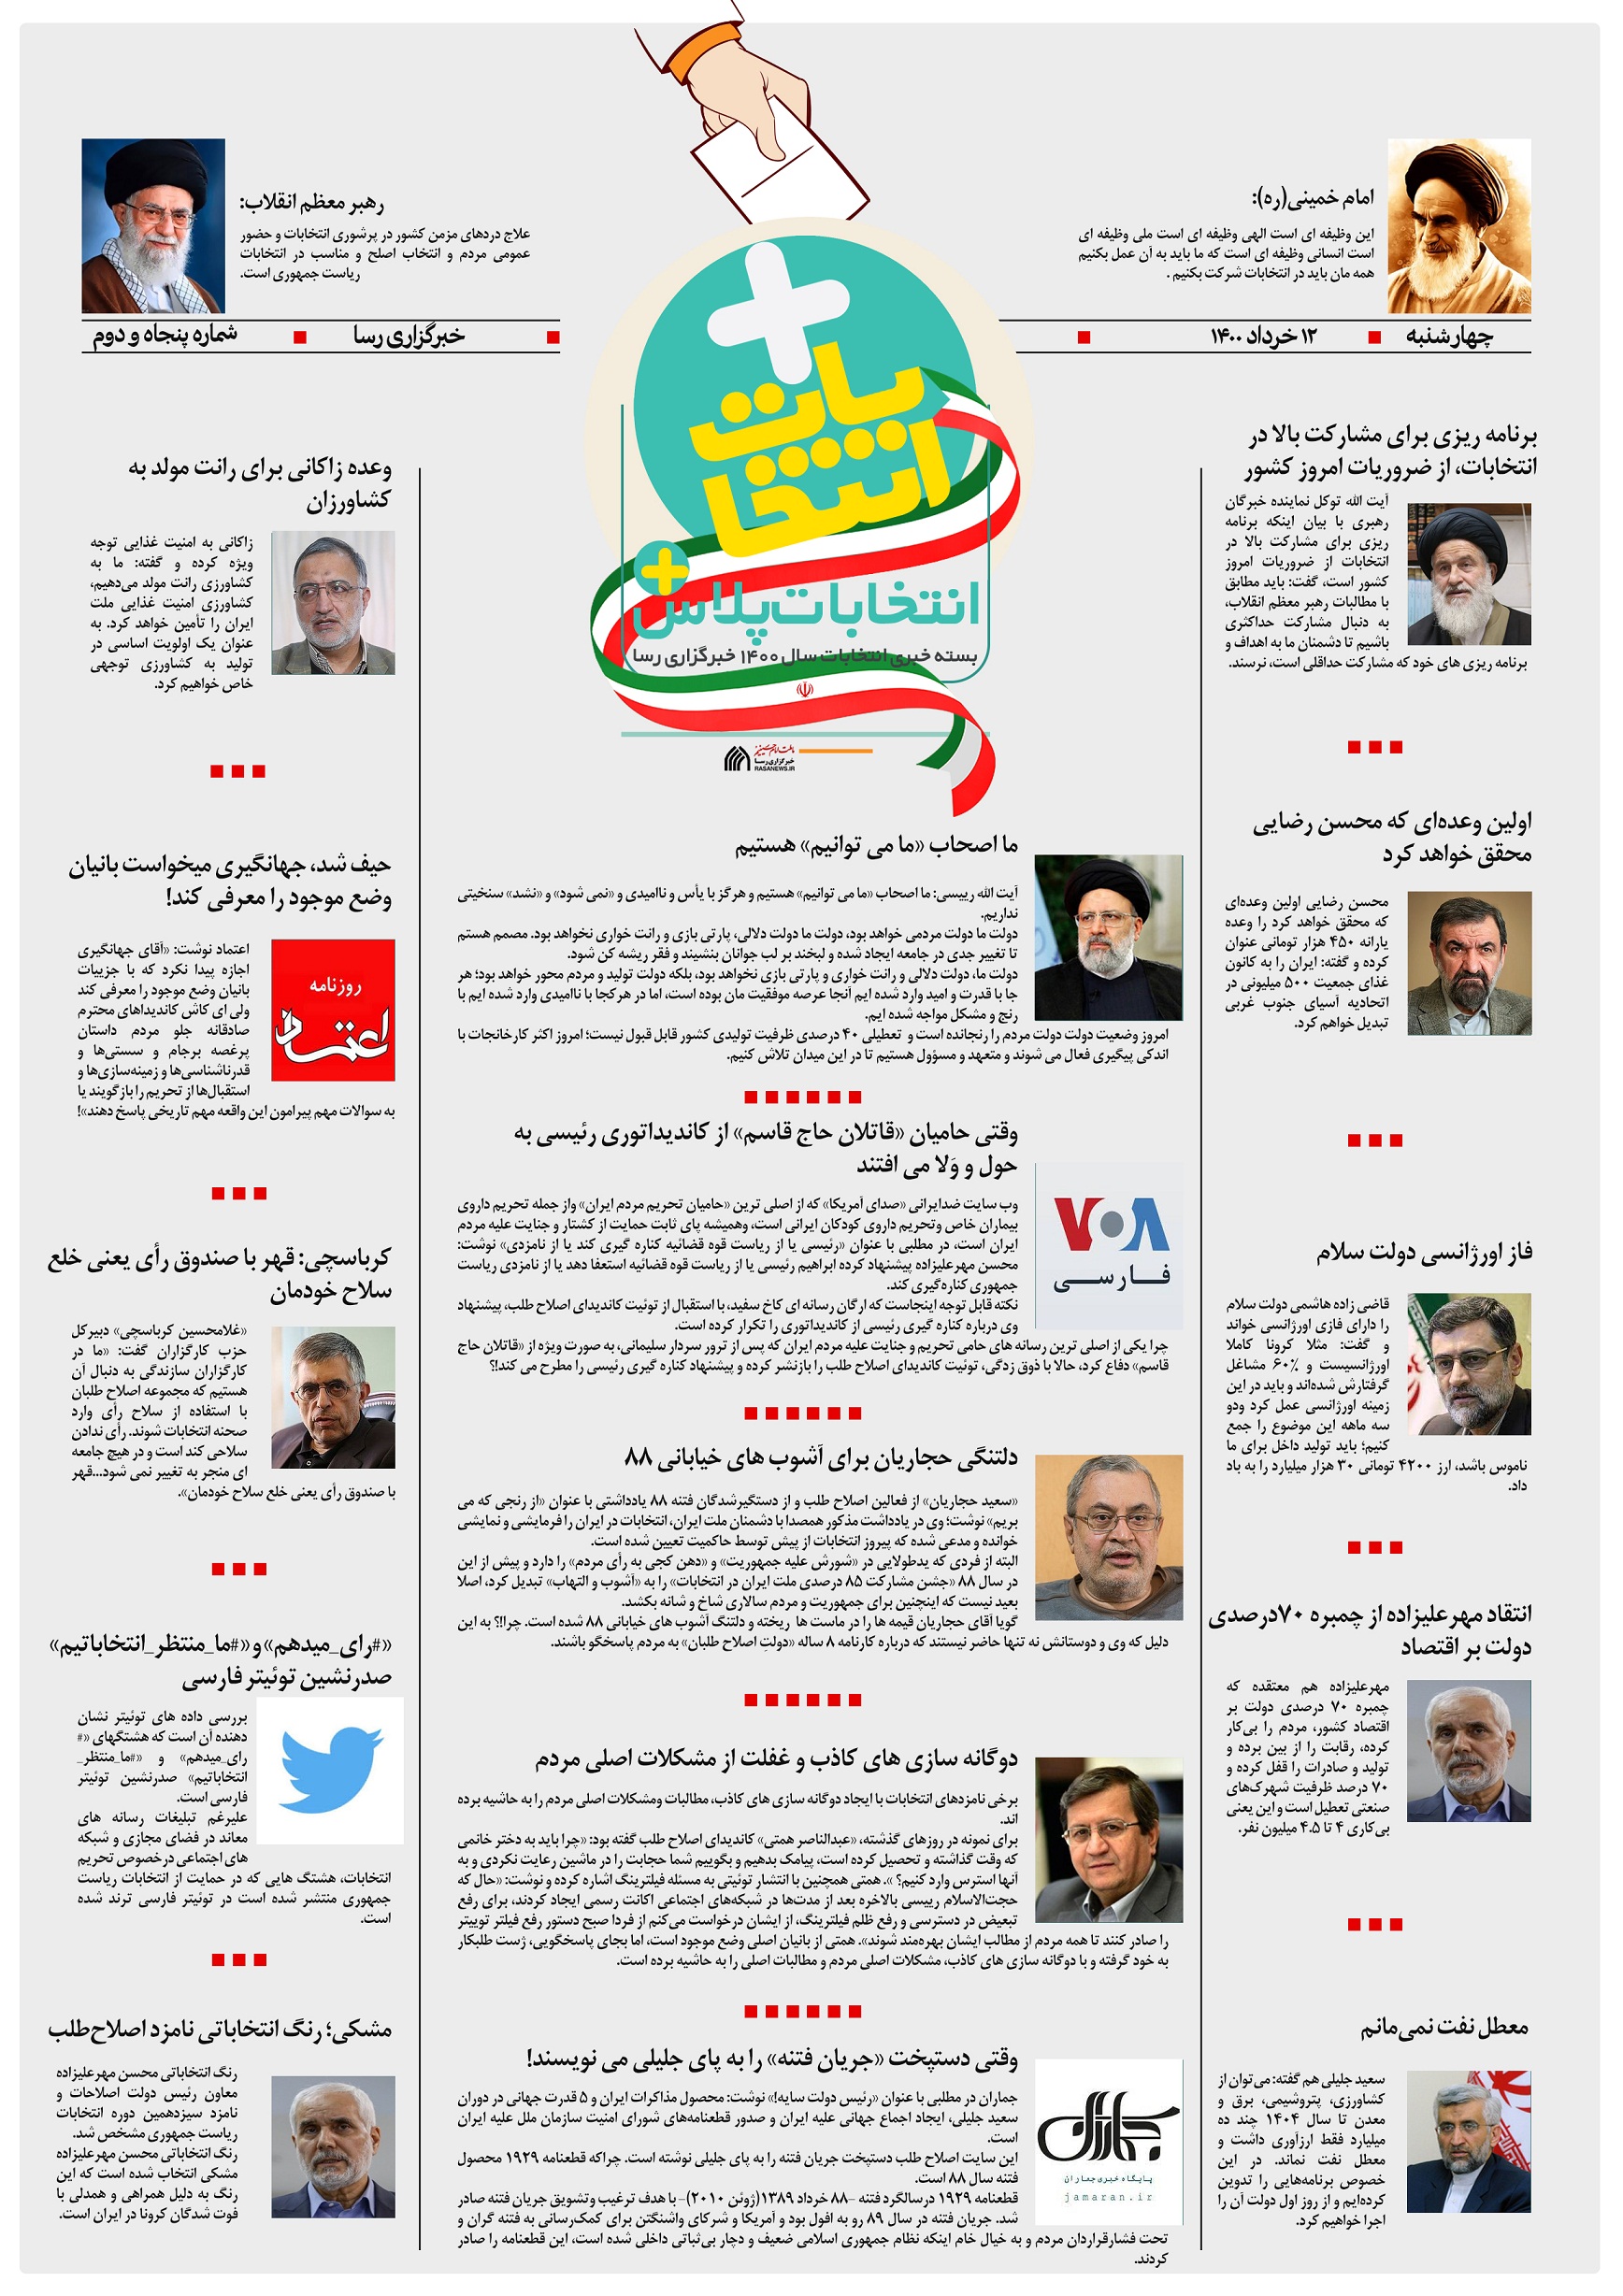 از صدر نشینی «#رأی_میدهم» در توئیتر تا دلتنگی حجاریان برای آشوب های خیابانی